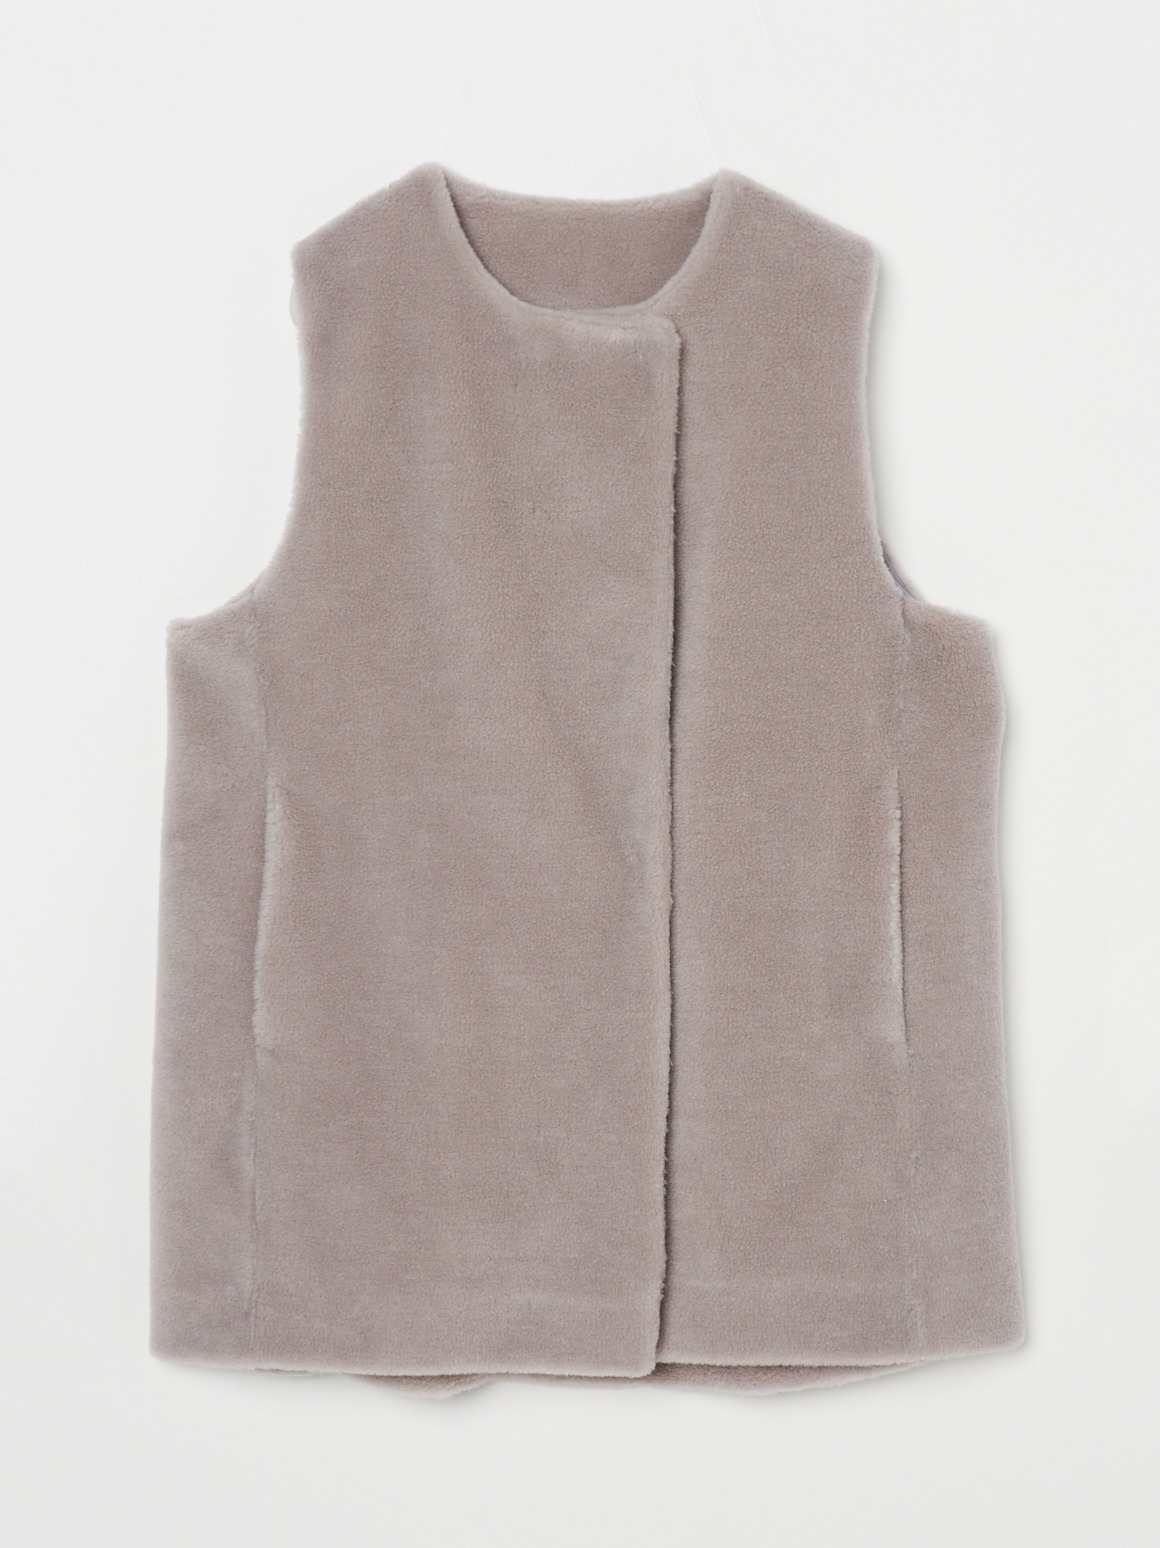 Wool boa vest 詳細画像 grey 1